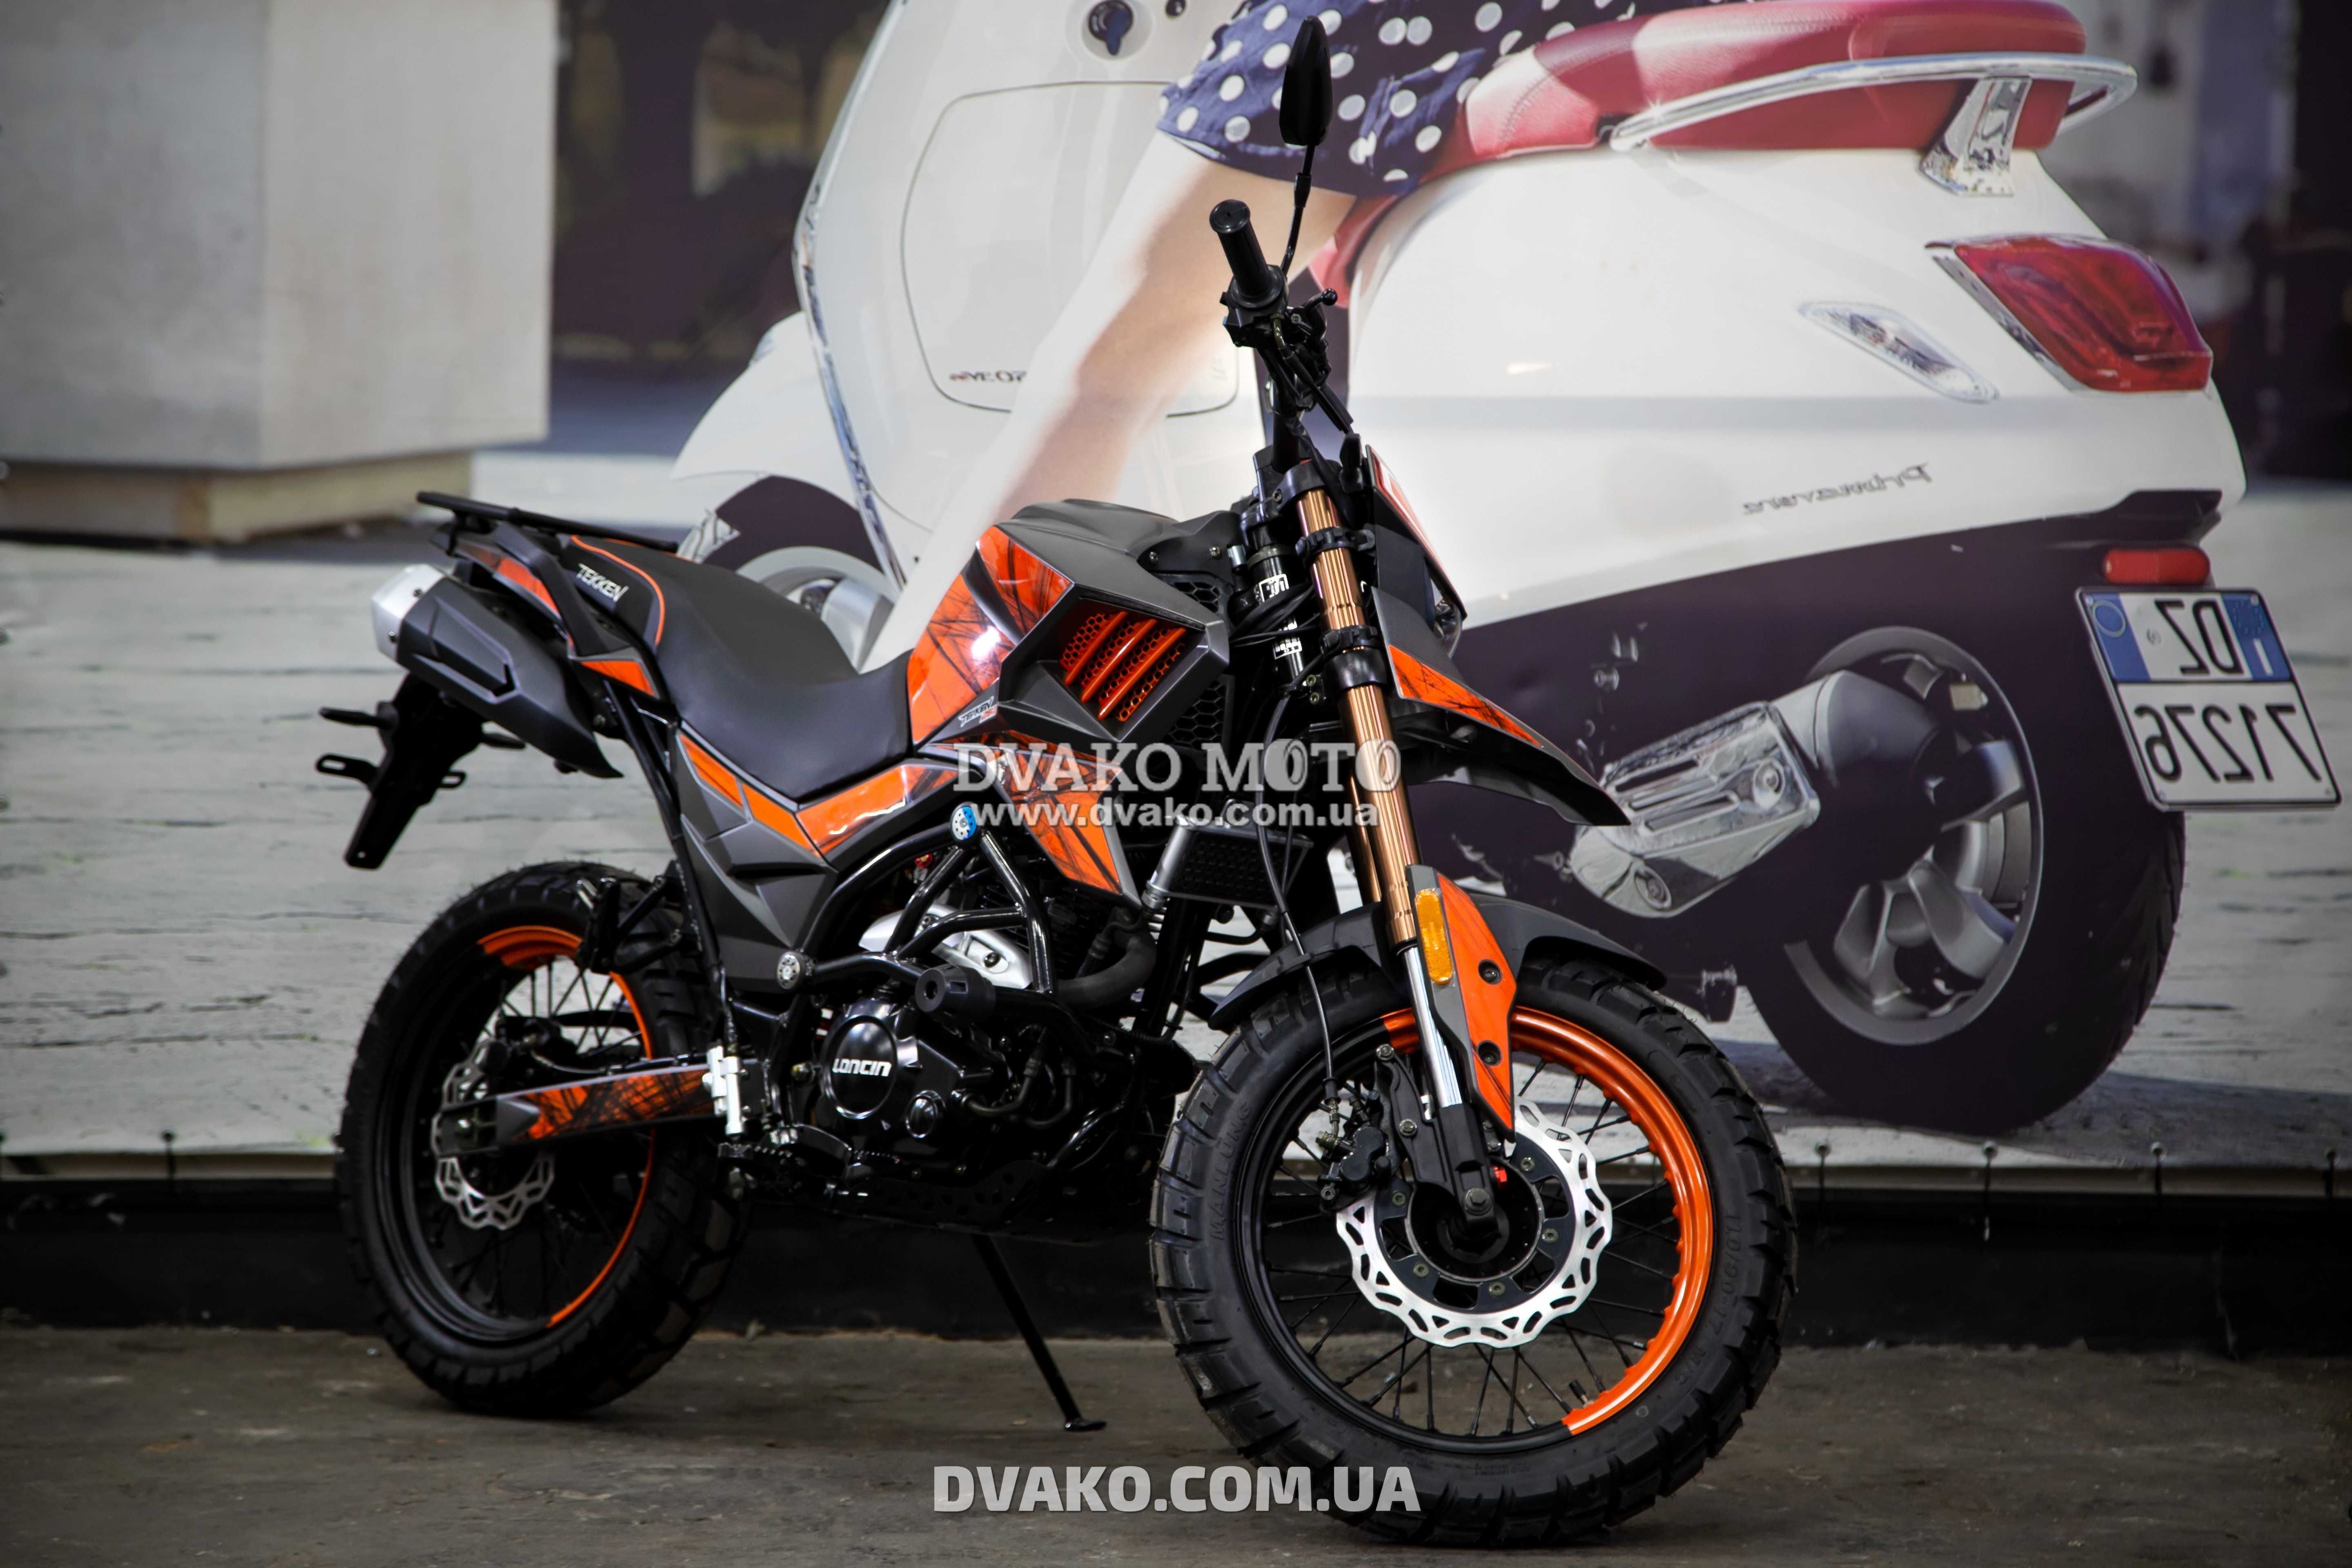 Новый Мотоцикл Tekken 250, Кредит, Гарантия. (Мотосалон Dvako Moto)